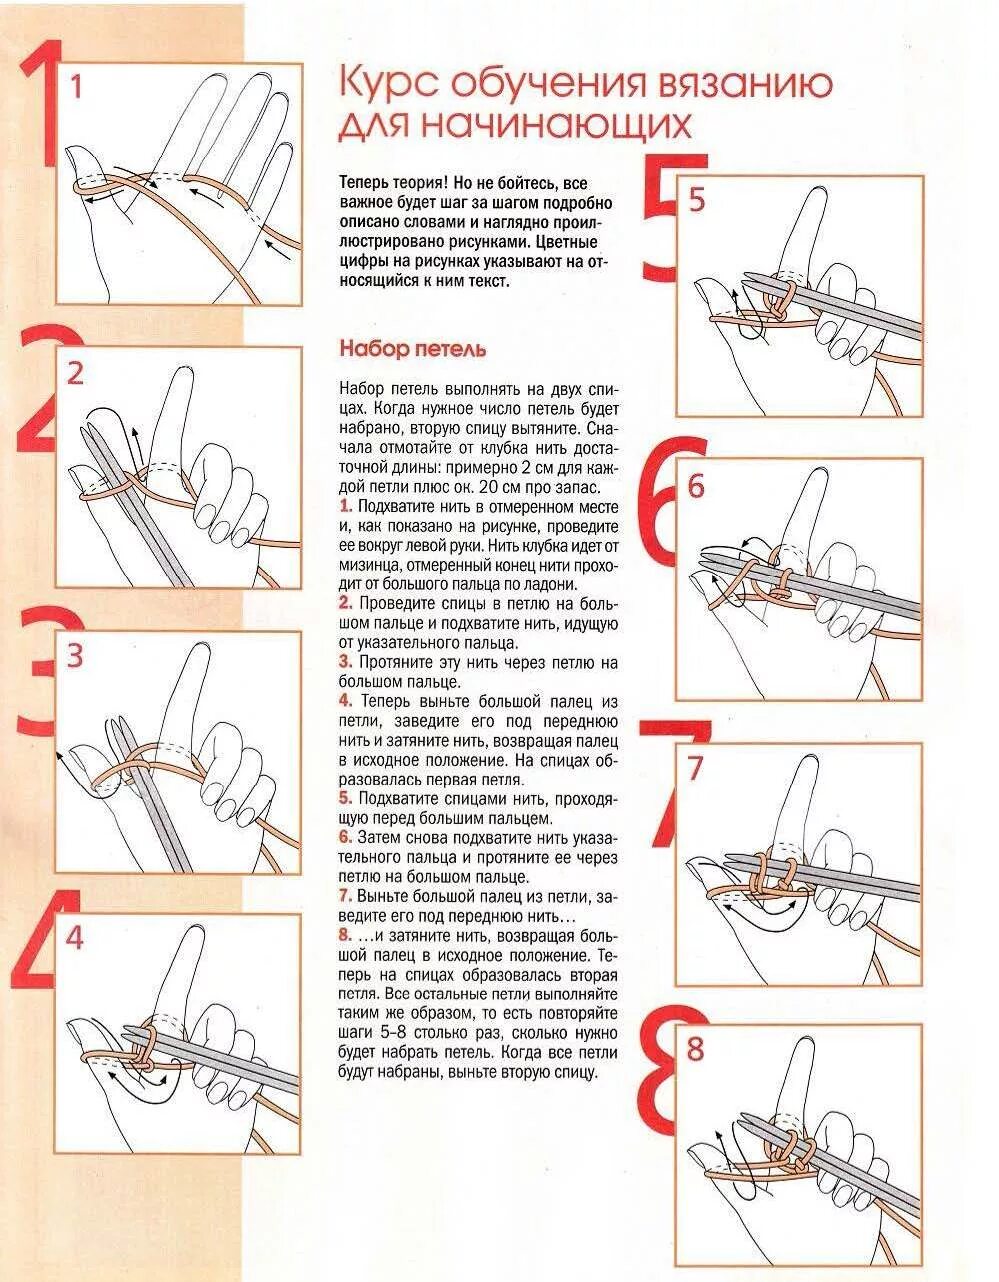 1 урок вязания. Как вязать петли спицами для начинающих пошагово. Как начать вязать спицами для начинающих пошагово. Схема набора петель на спицах. Вязание на 2 спицах для начинающих пошагово.